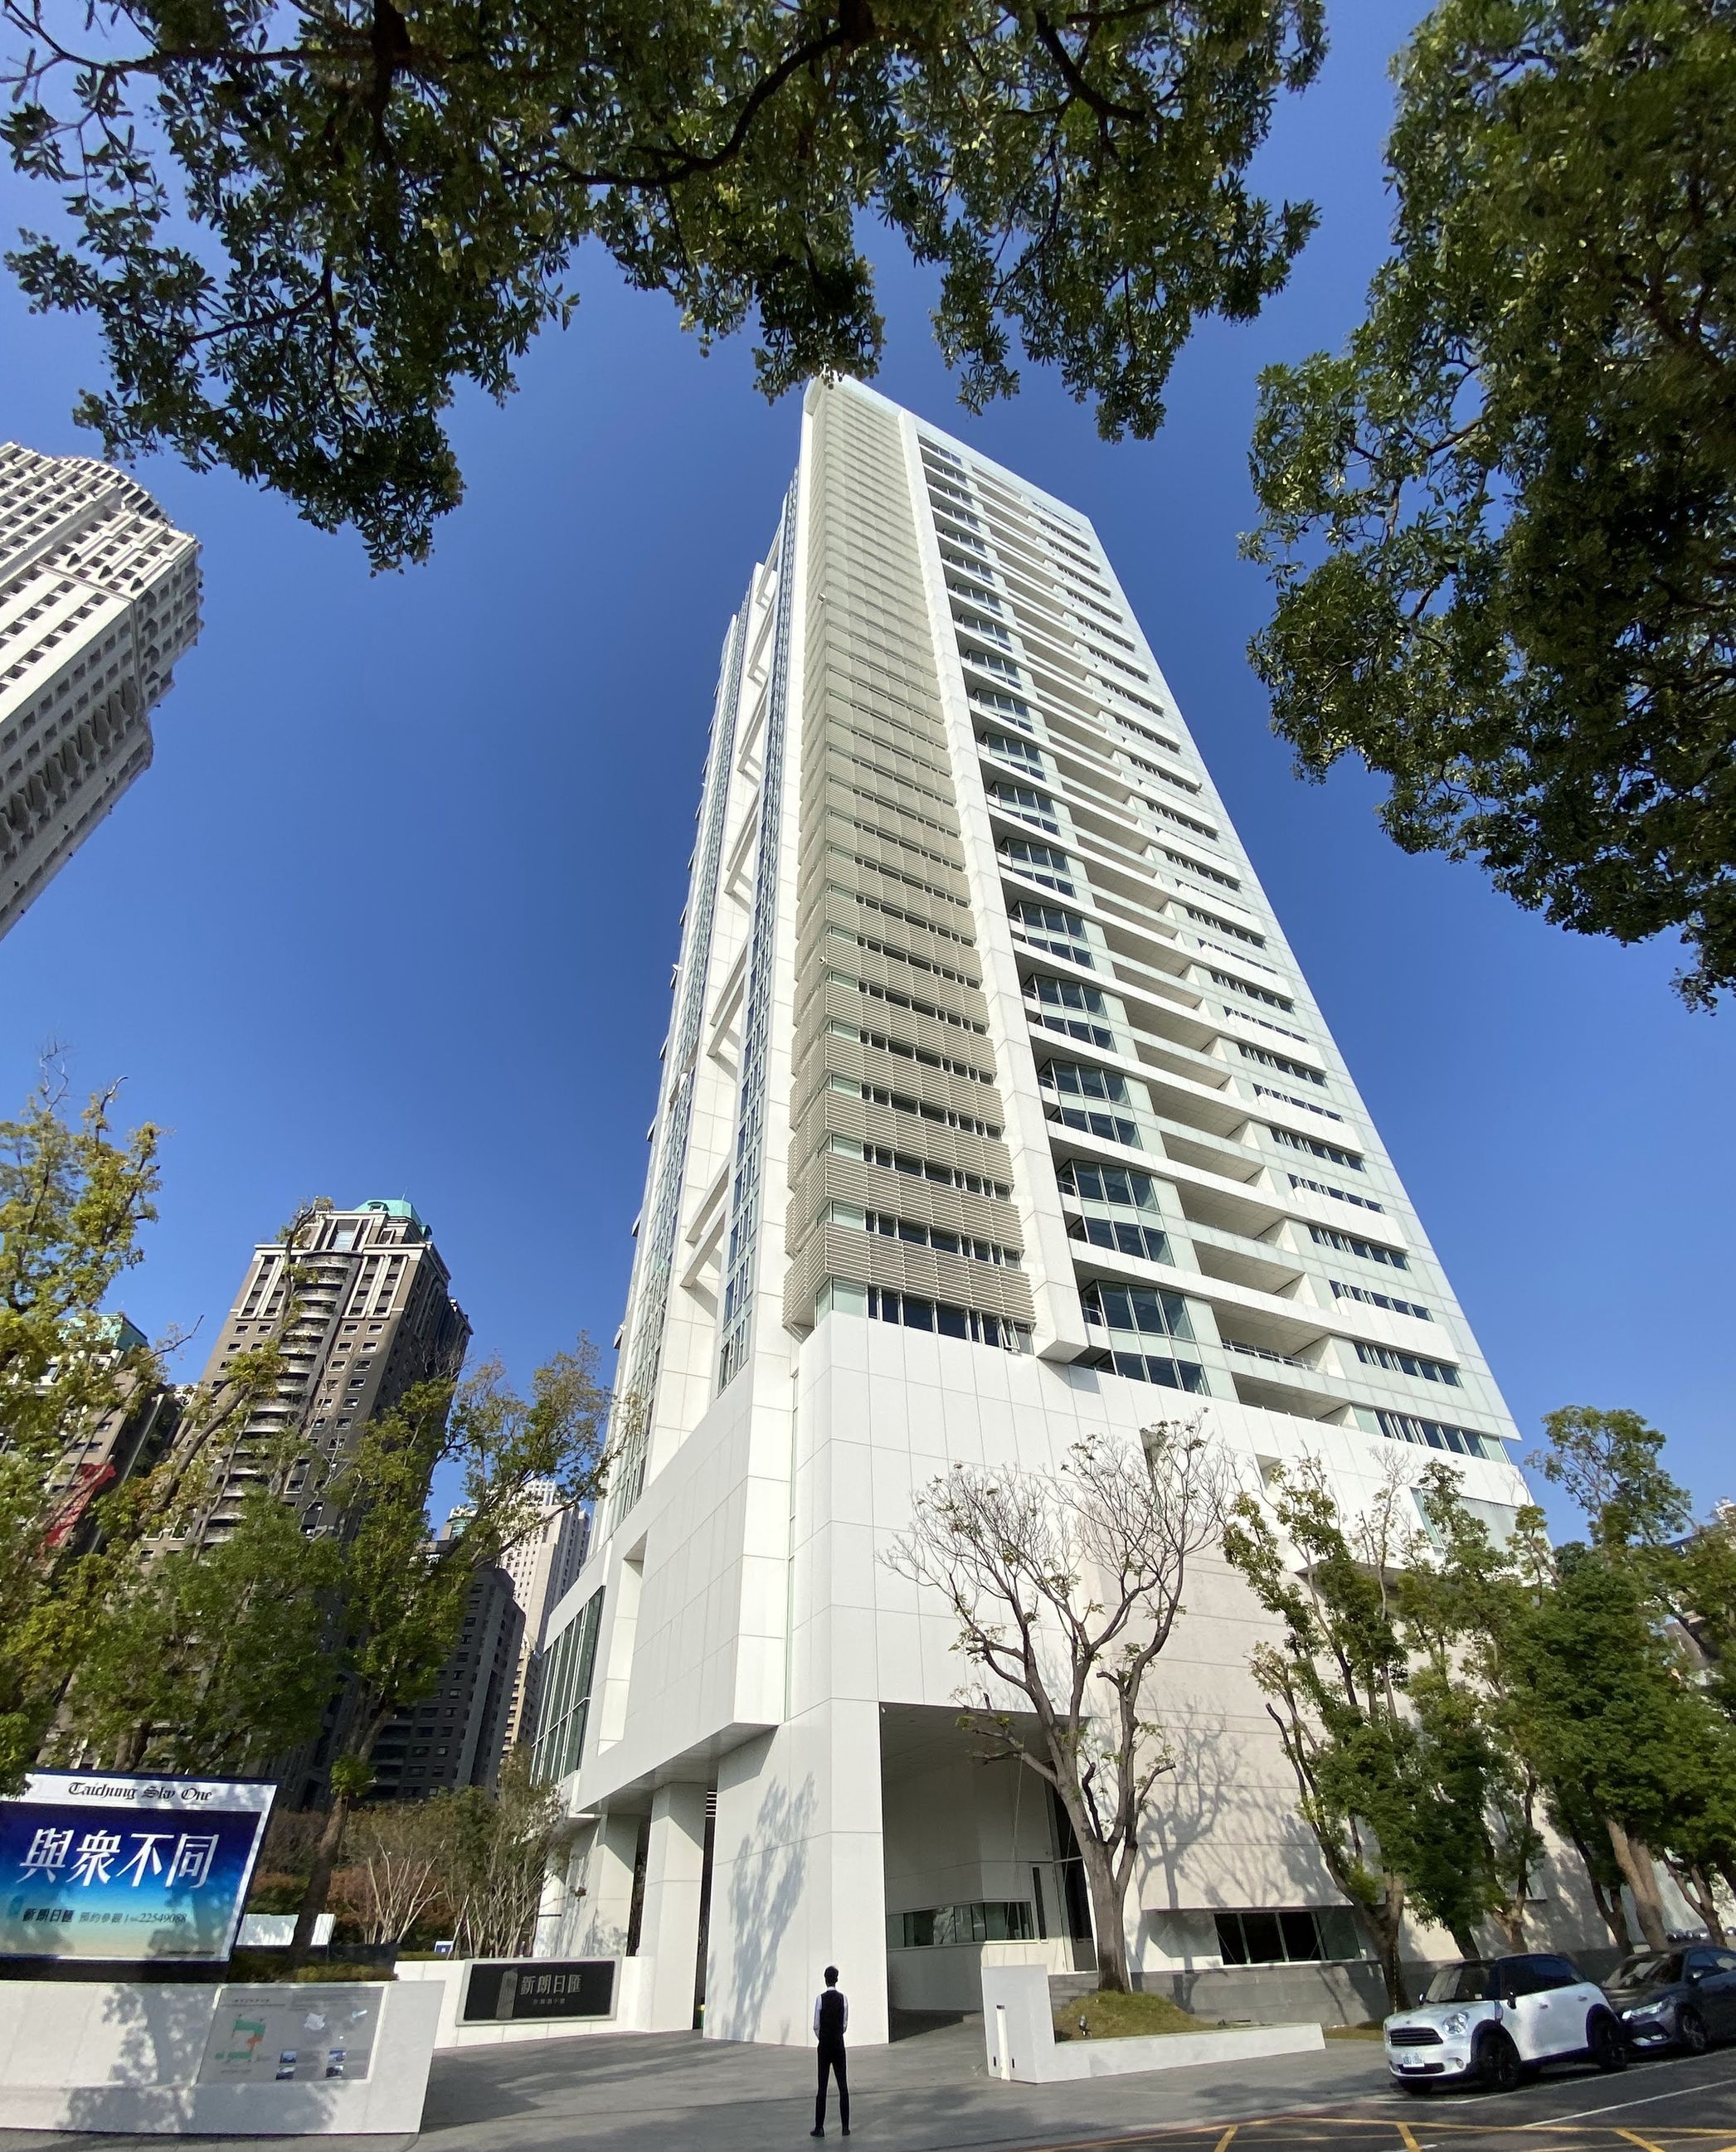 台中市七期「新朗日汇」豪宅大楼出自「白派大师」Richard Meier手笔，整栋纯白大楼成为特色。记者赵容萱／摄影